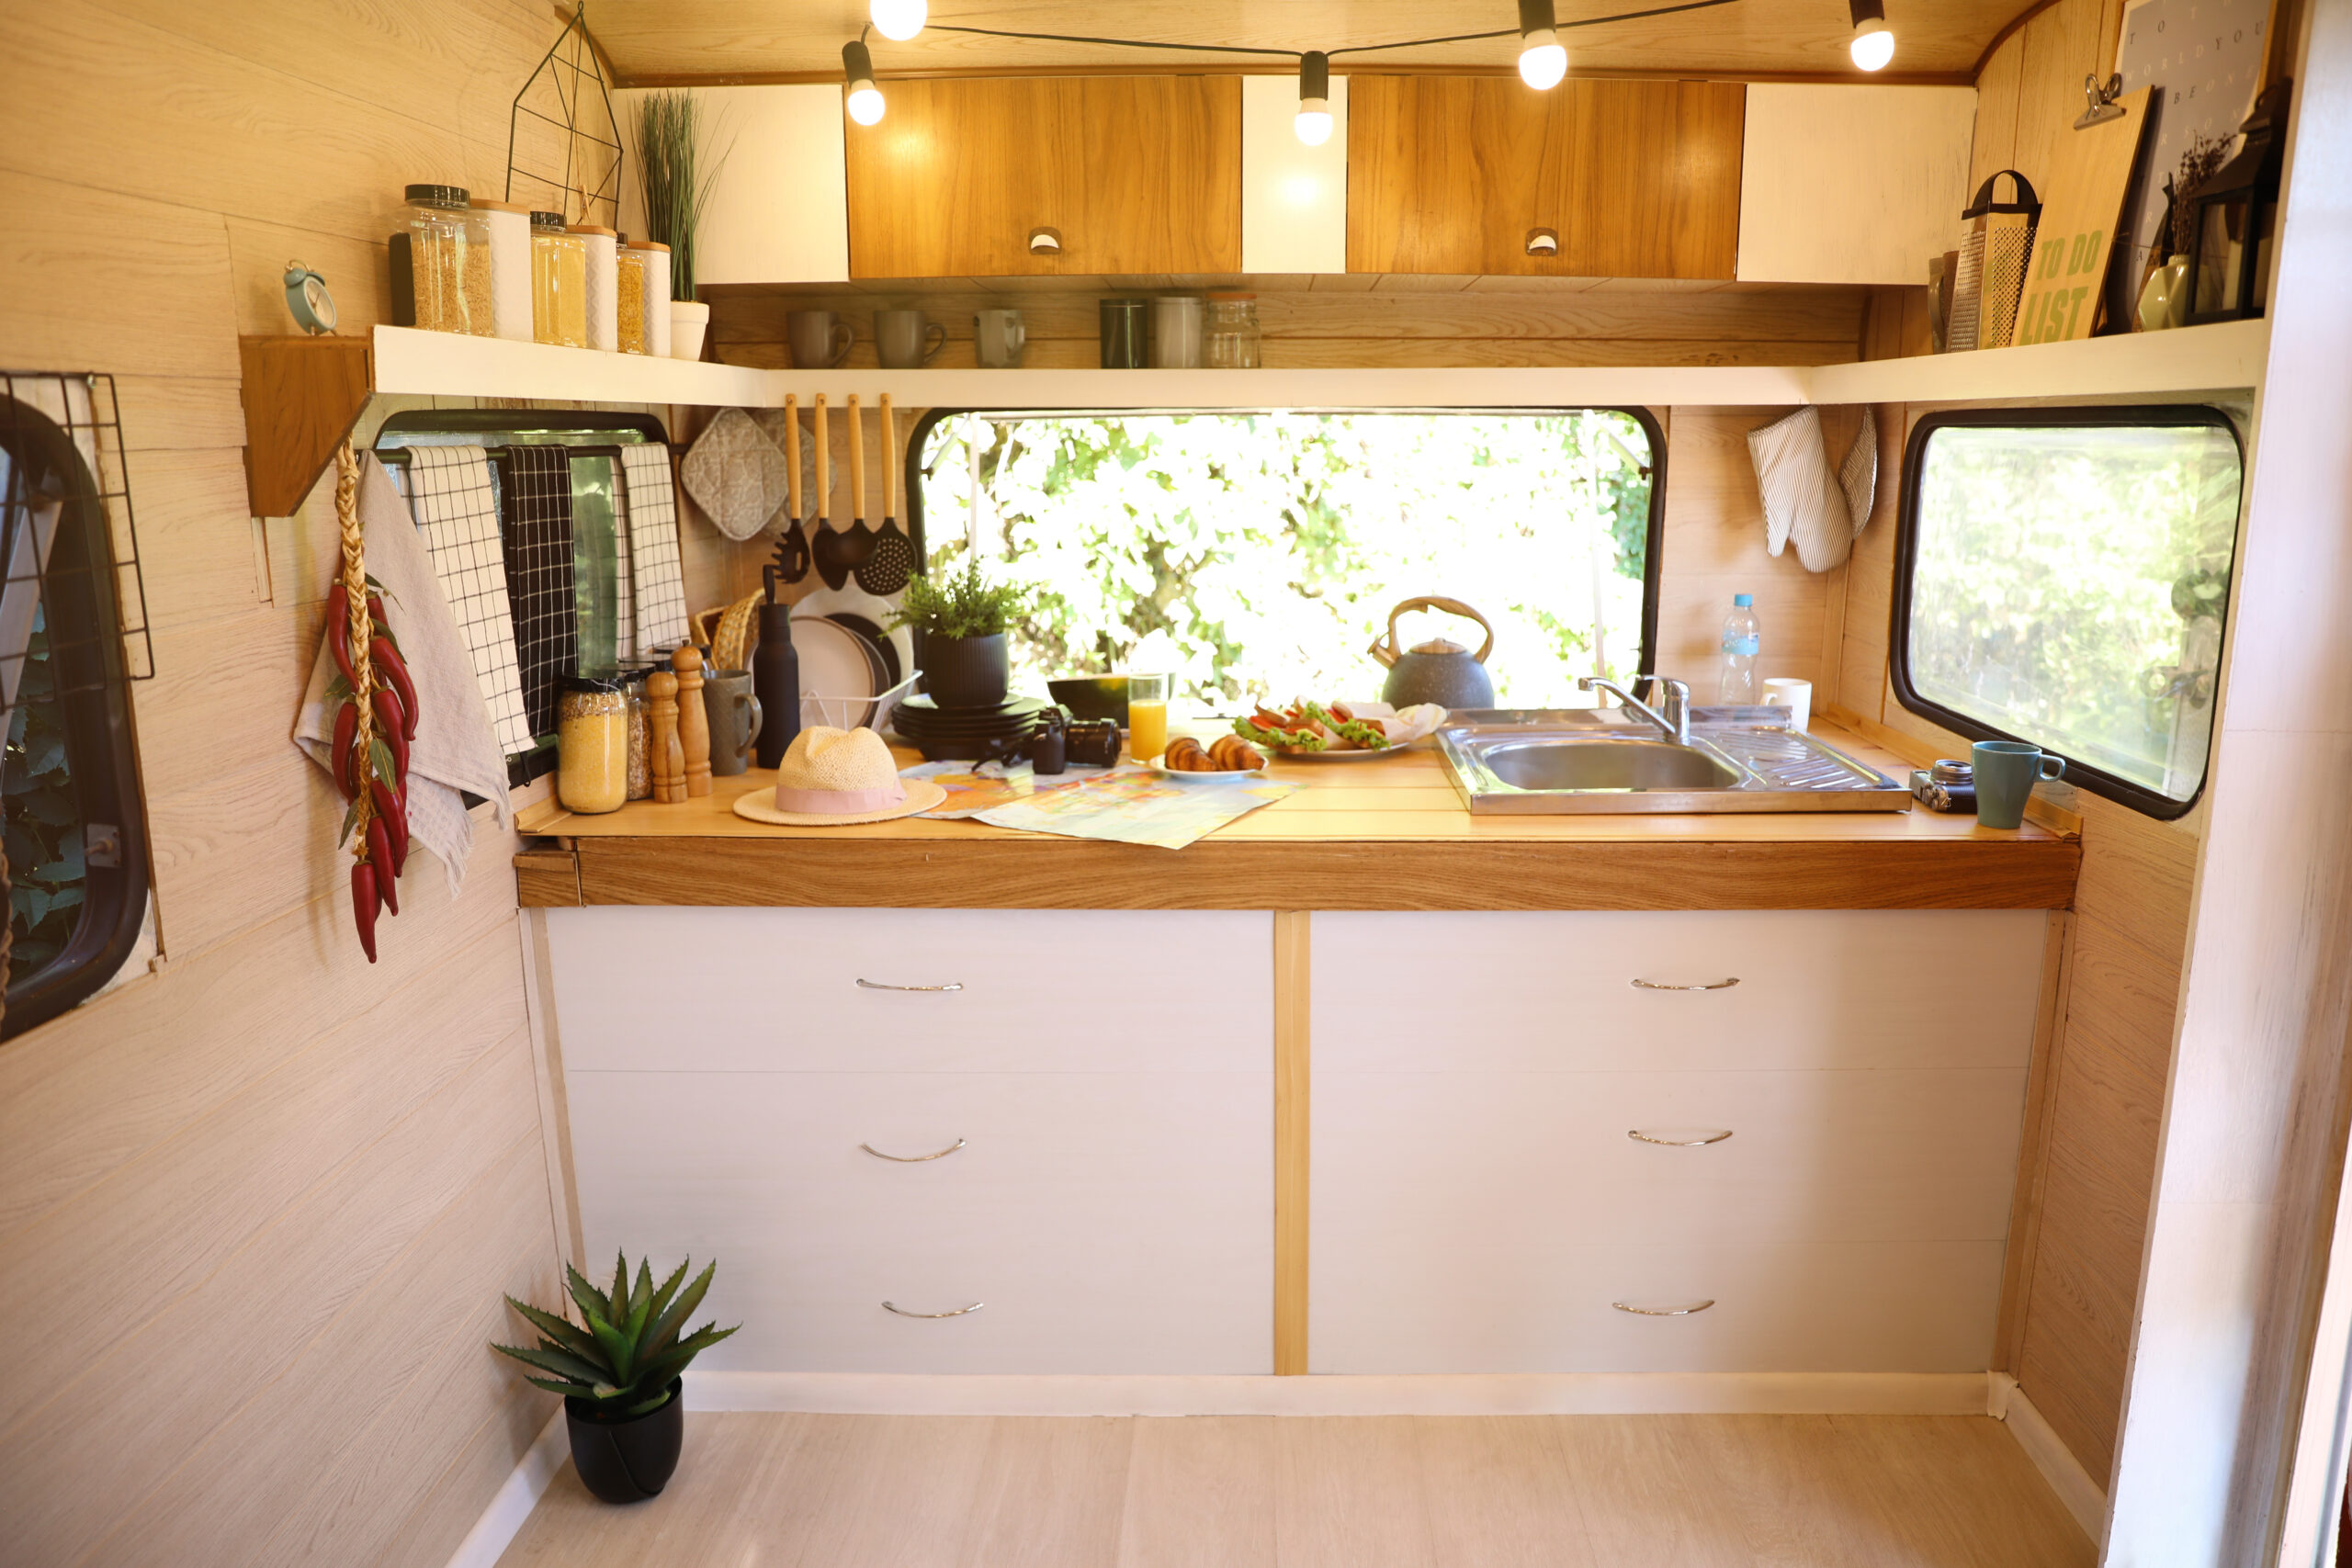 RV interior kitchen - feature image for RV decor ideas